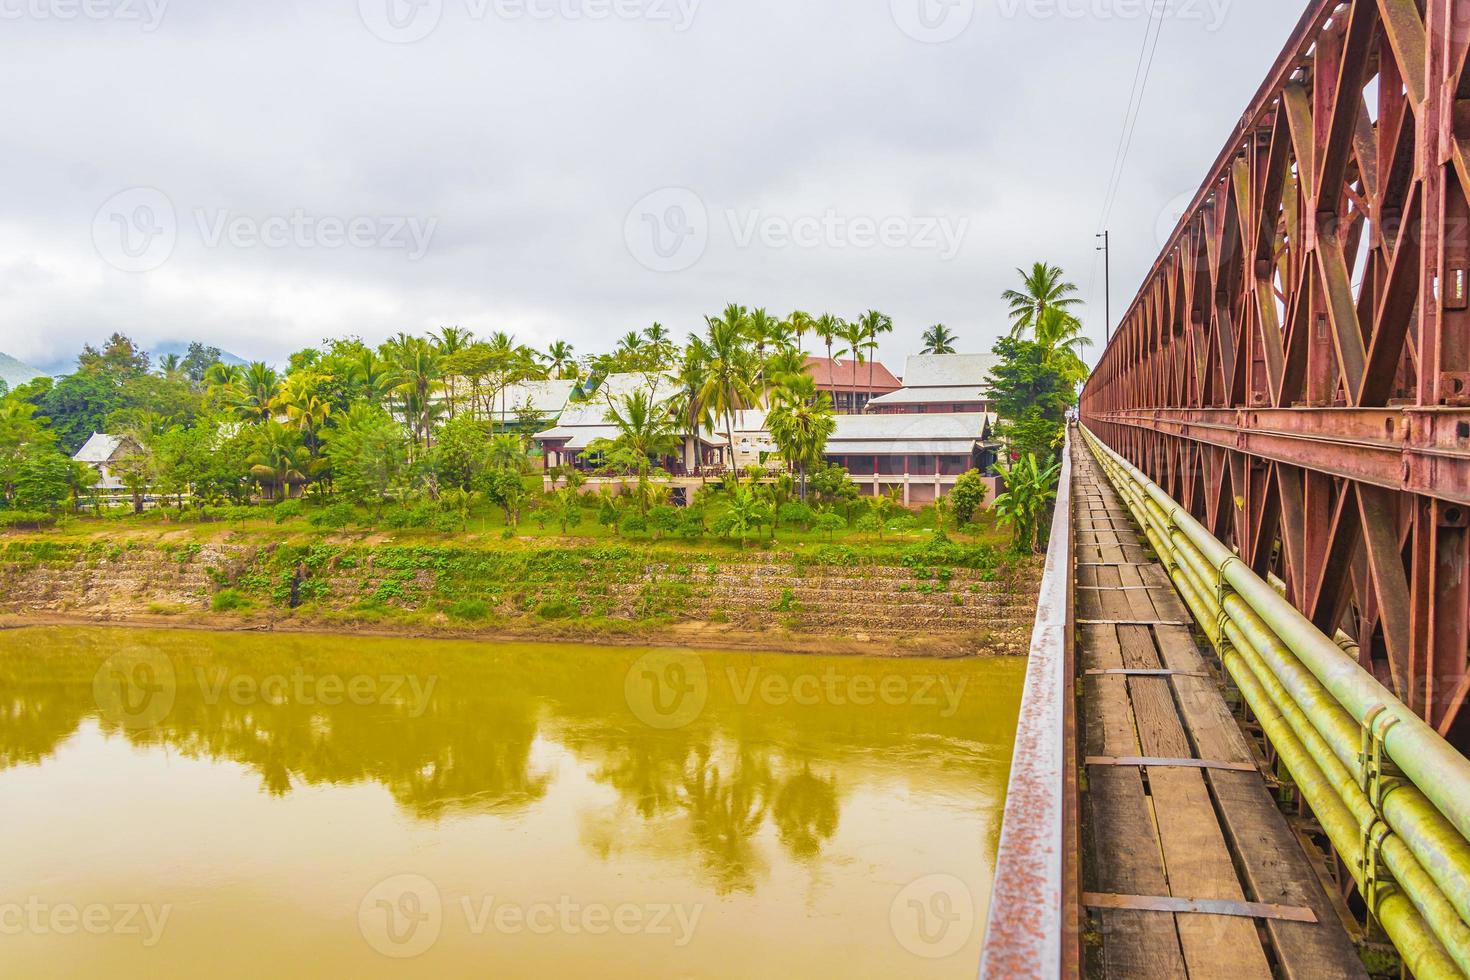 velha ponte francesa da placa de madeira luang prabang laos asia. foto